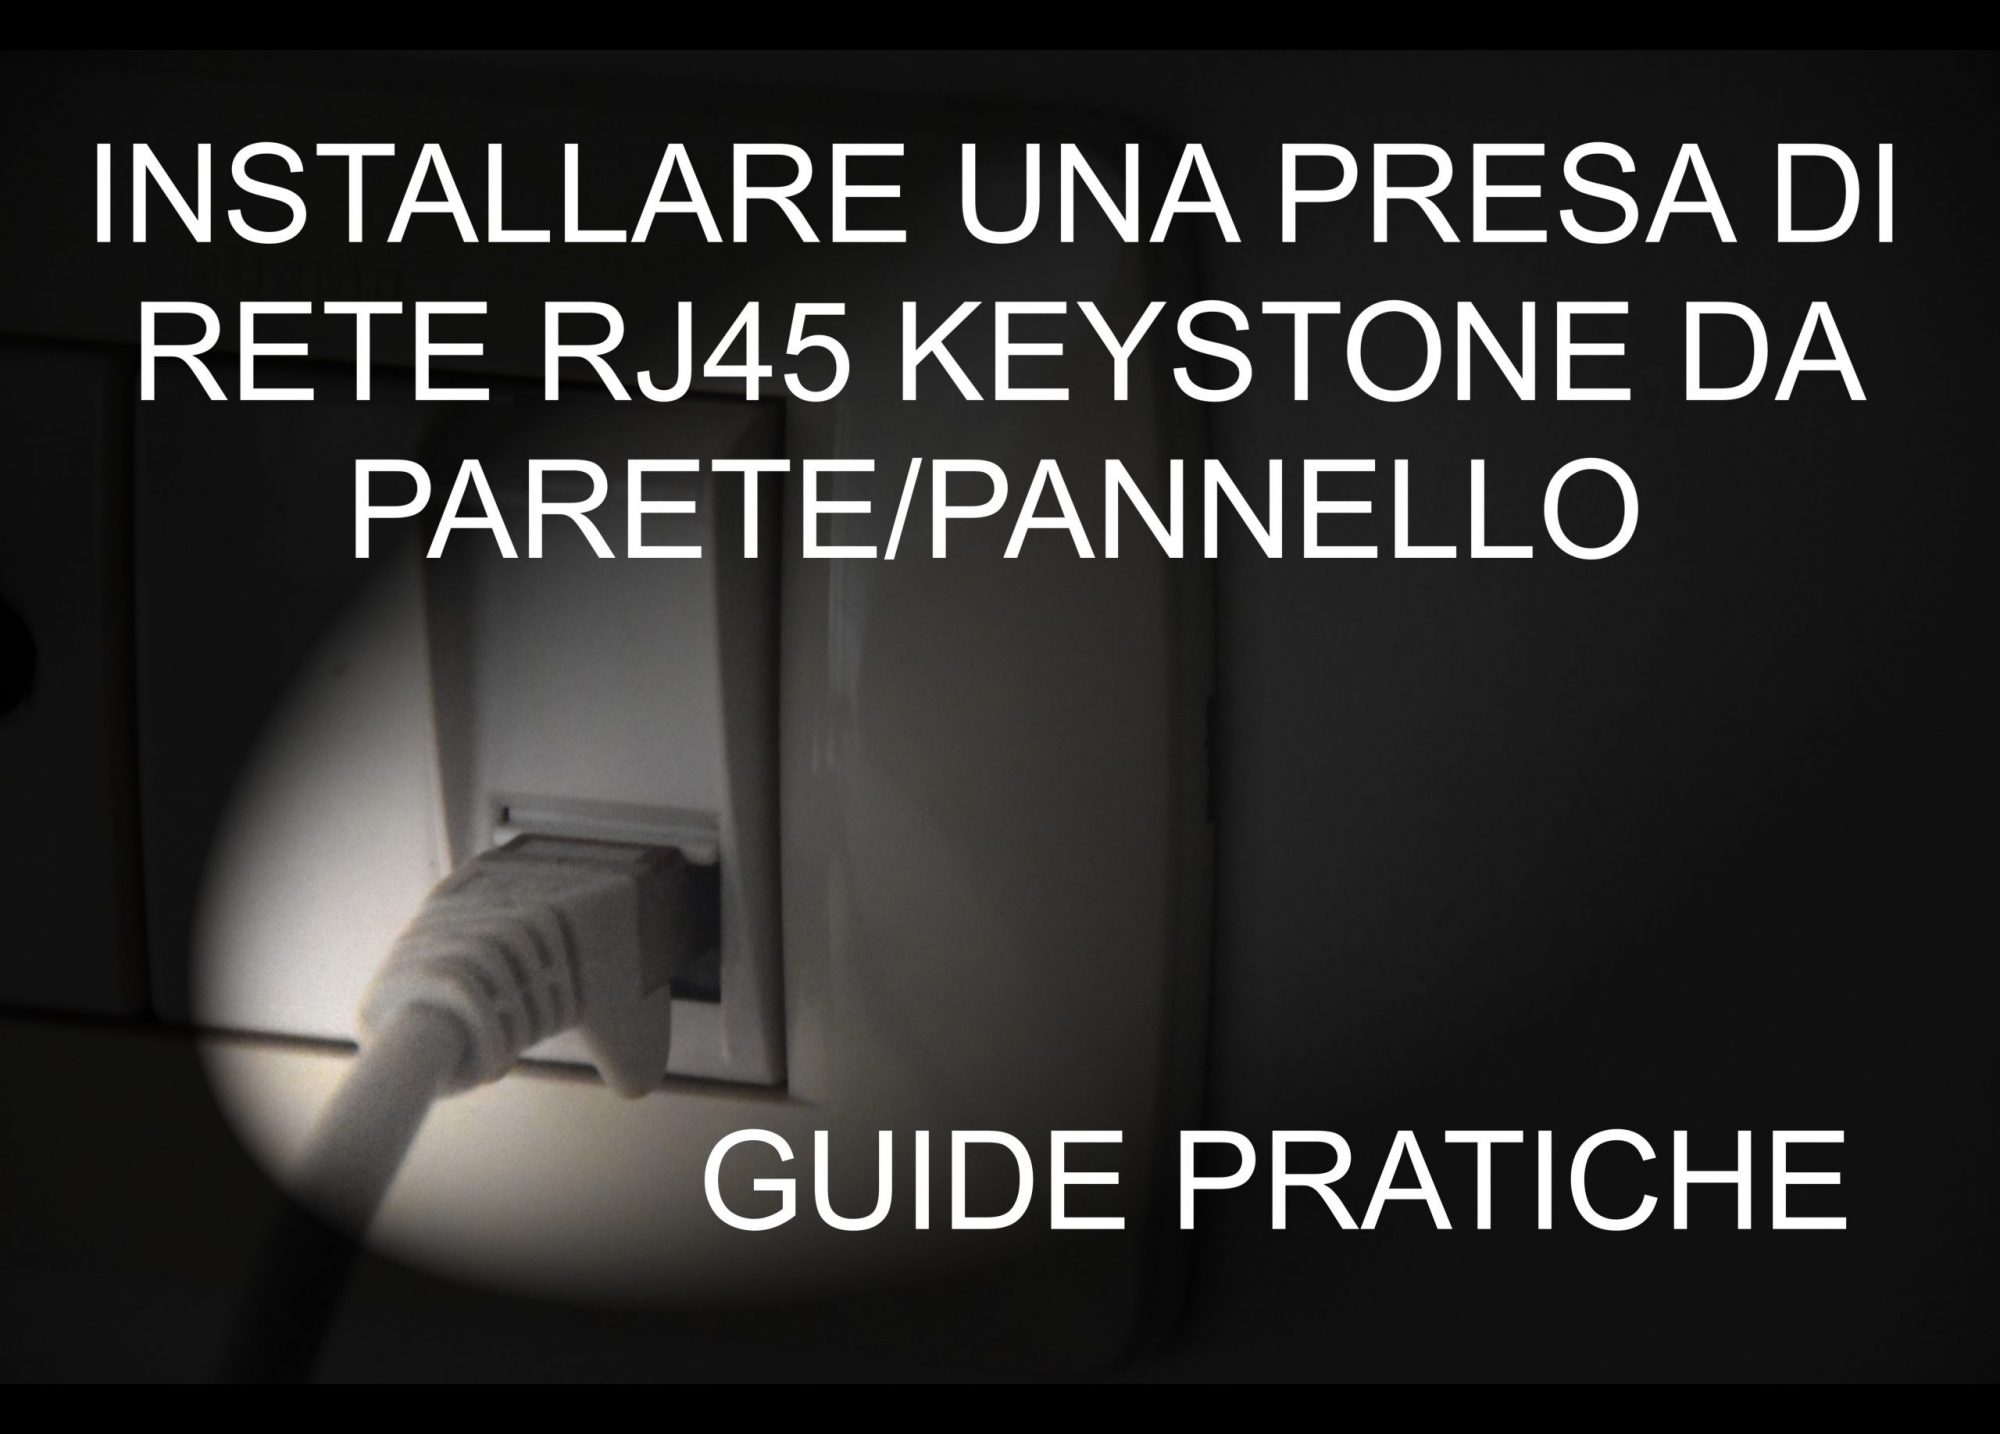 Come installare una Presa di Rete RJ45 “keystone” da parete/pannello – GUIDE PRATICHE